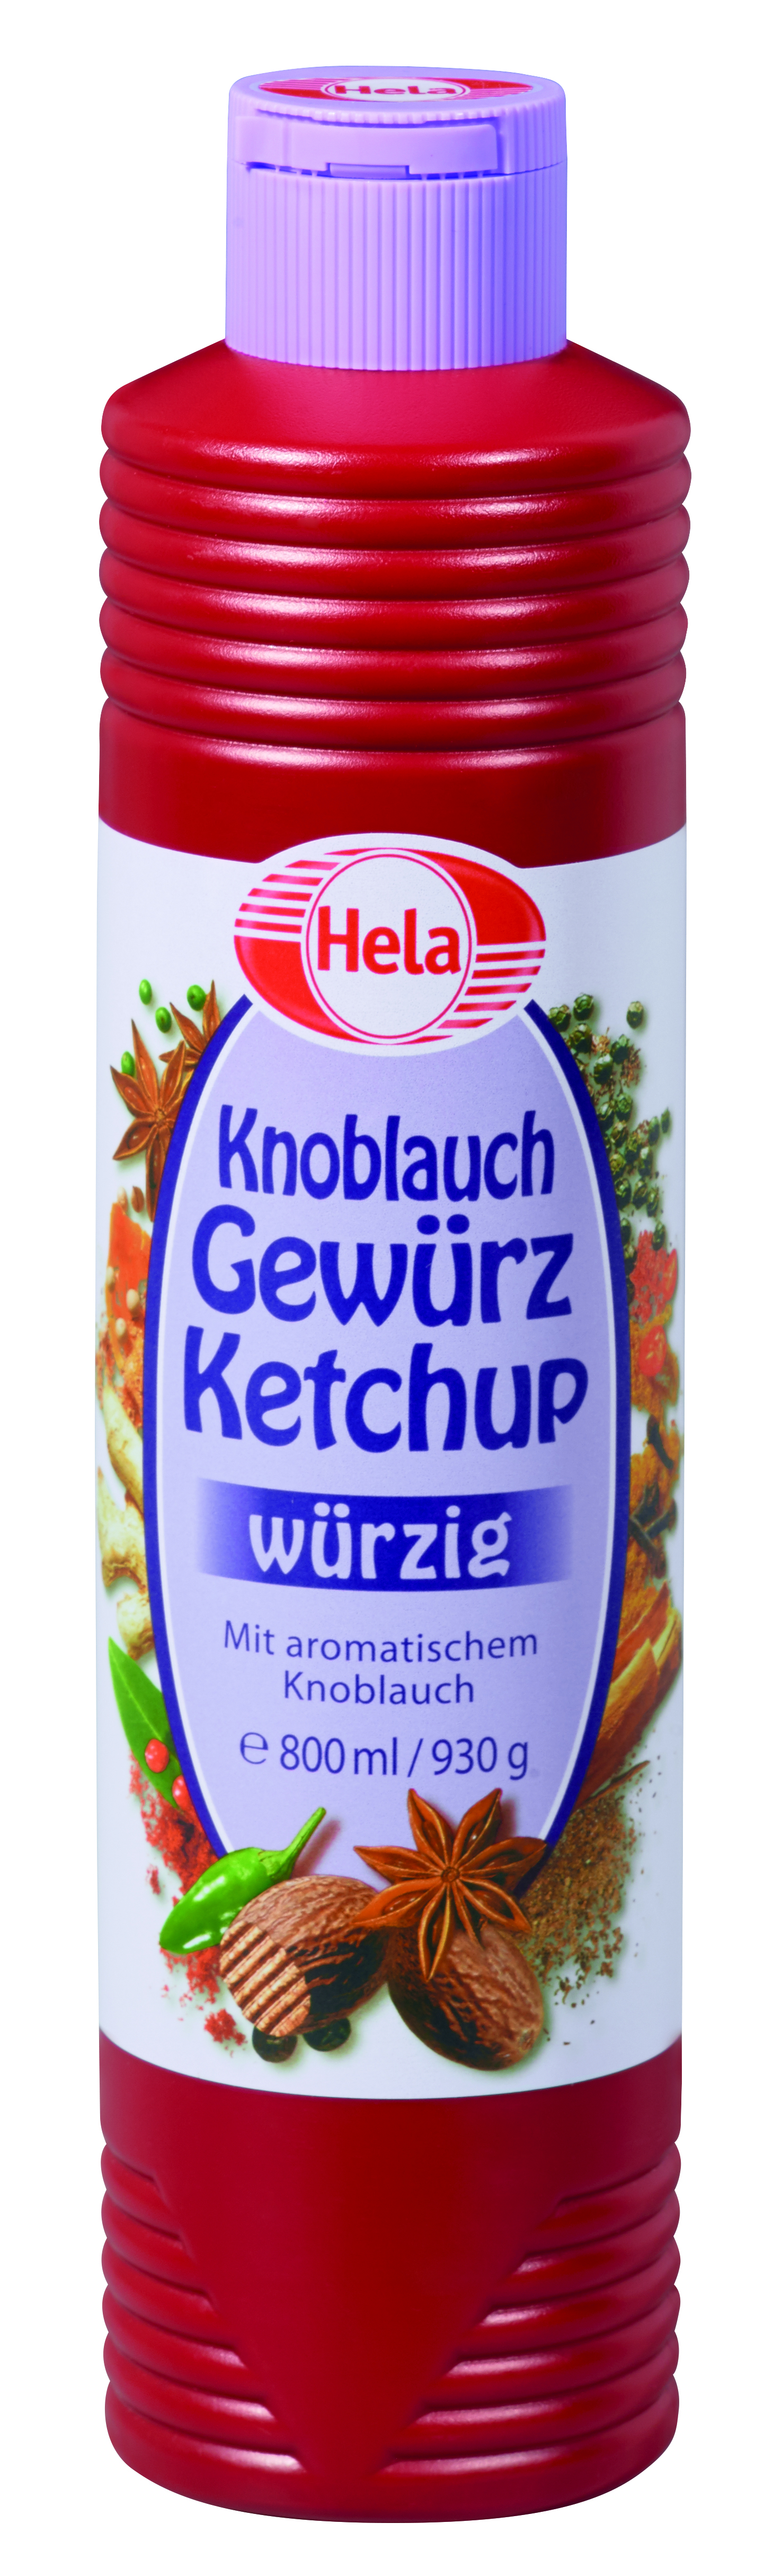 Hela, Gewürz Ketchup, Knoblauch, Sauce, 800ml, Flasche